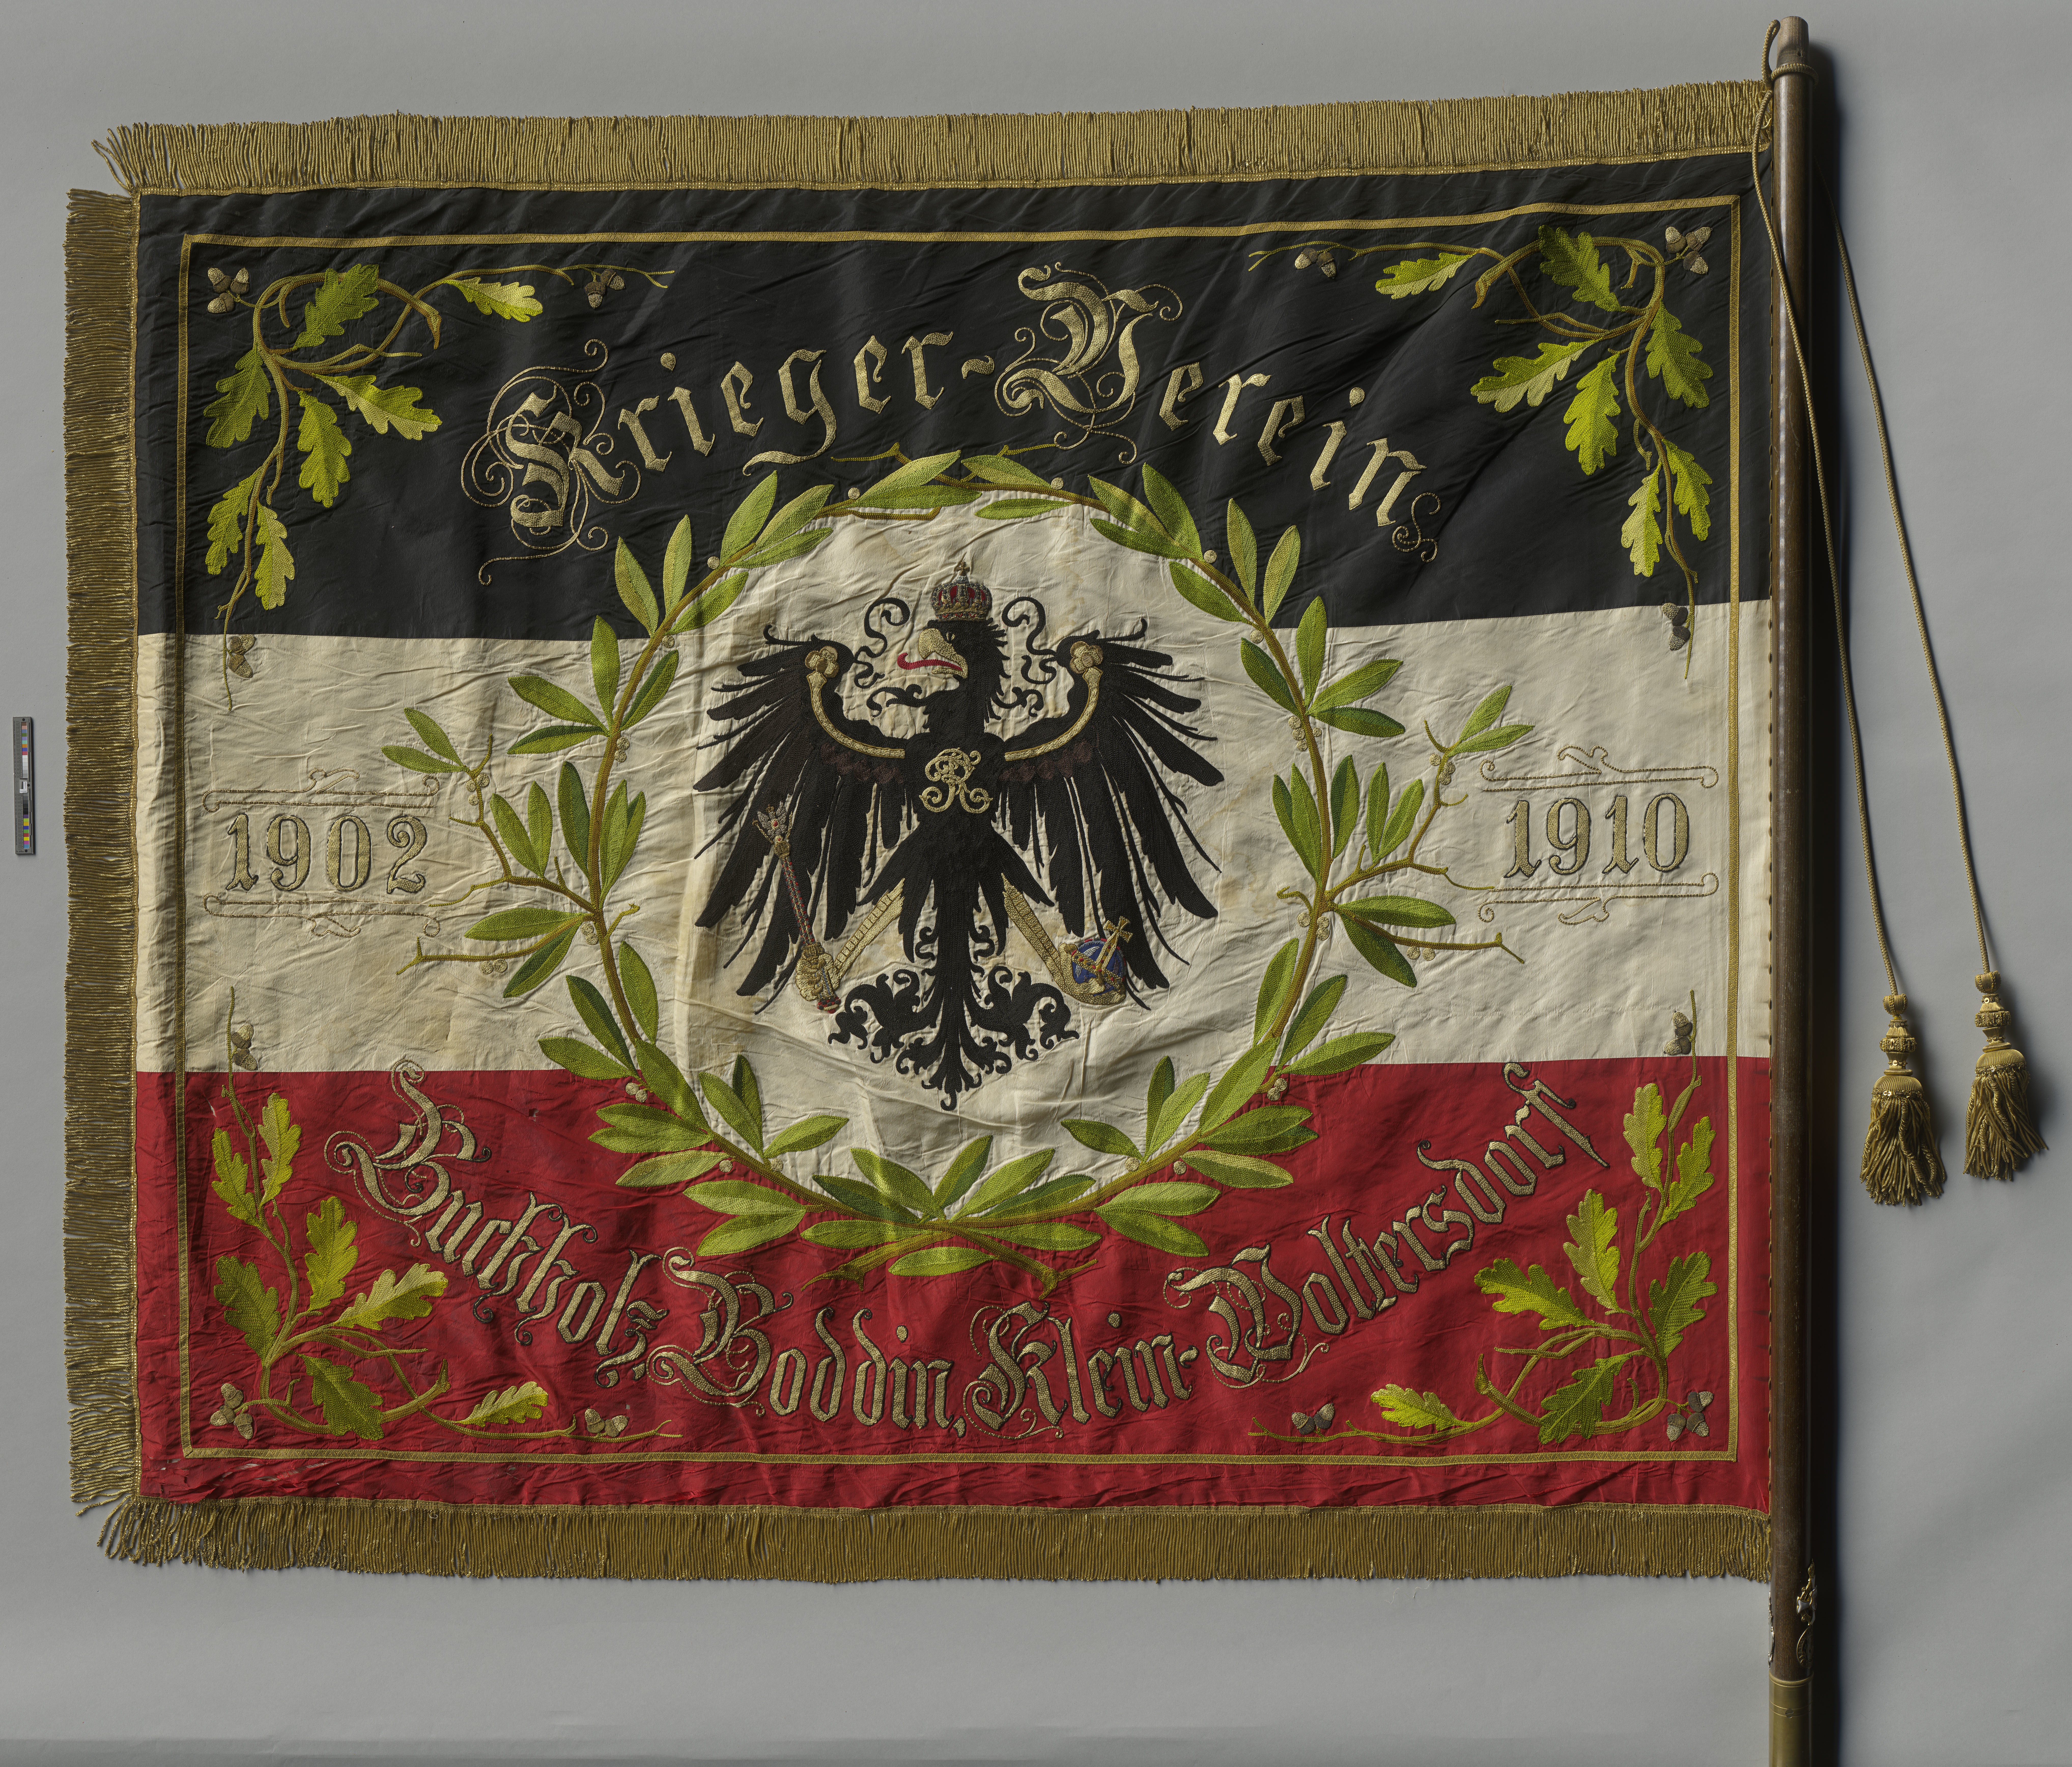 Fahne des Krieger Verein Buchholz, Boddin, Klein-Woltersdorf 1902-1910 (Museumsfabrik Pritzwalk CC BY-NC-SA)